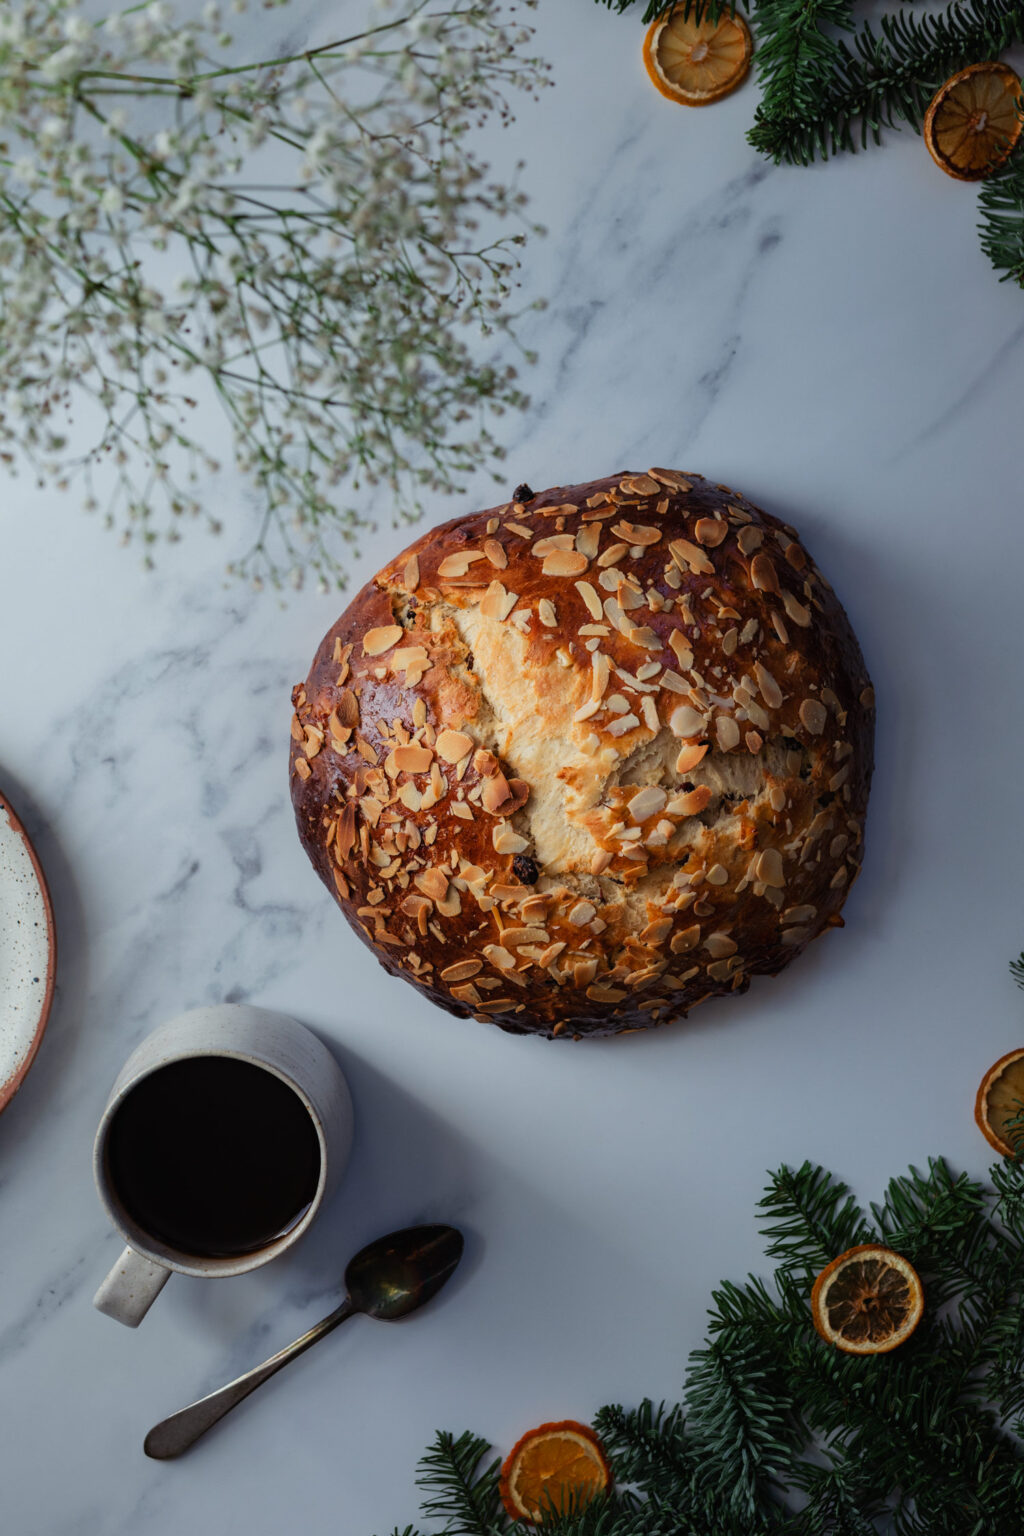 Julekake: Norwegian Christmas Bread | the Sunday Baker